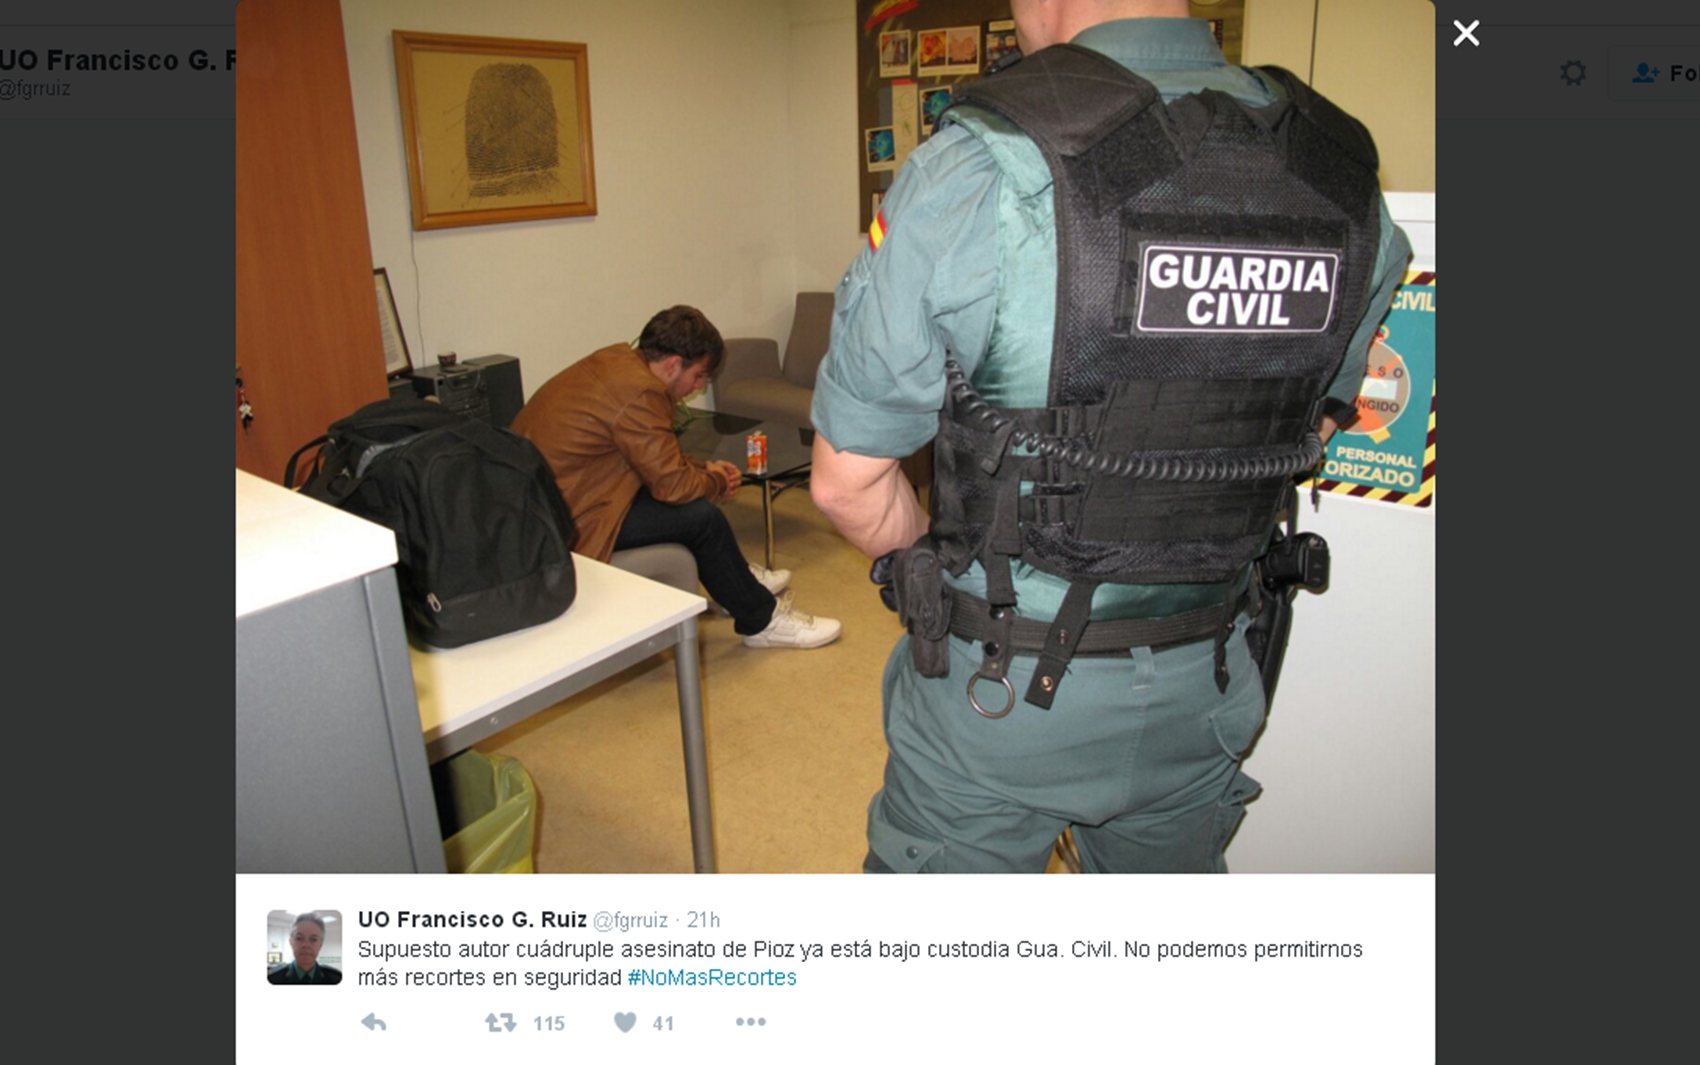 Patrick Gouveia, suspeito de esquartejar família na Espanha, detido na sede da Guarda Civil espanhola em Madri (Foto: Reprodução/Twitter/fgrruiz)